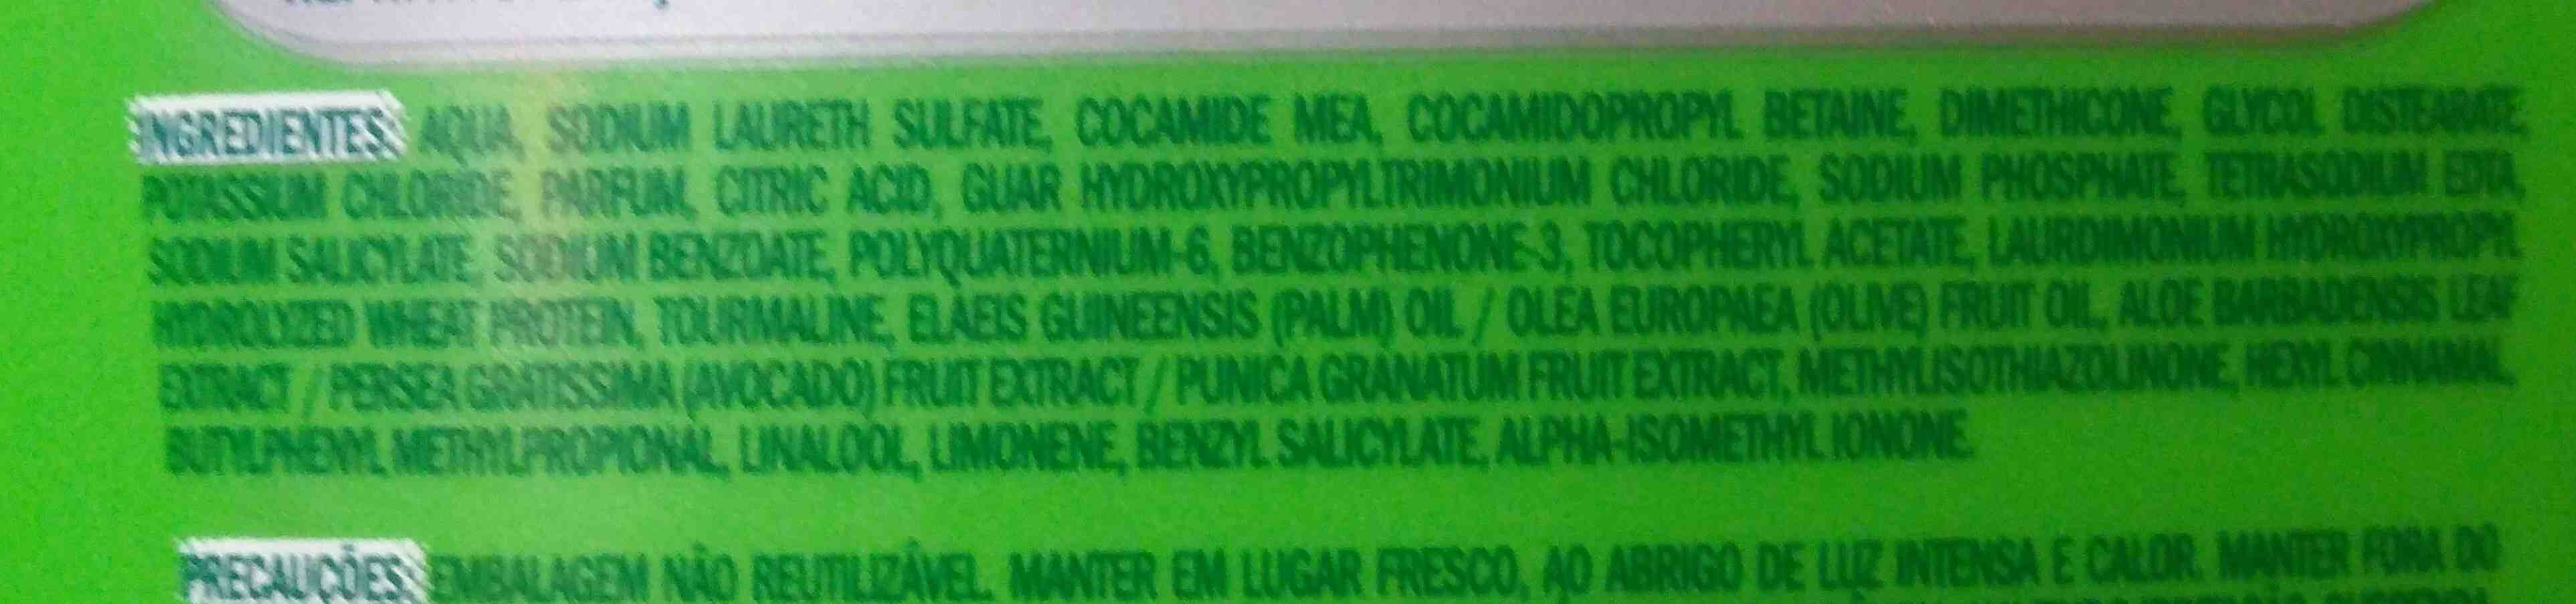 palmolive - Ingredientes - en